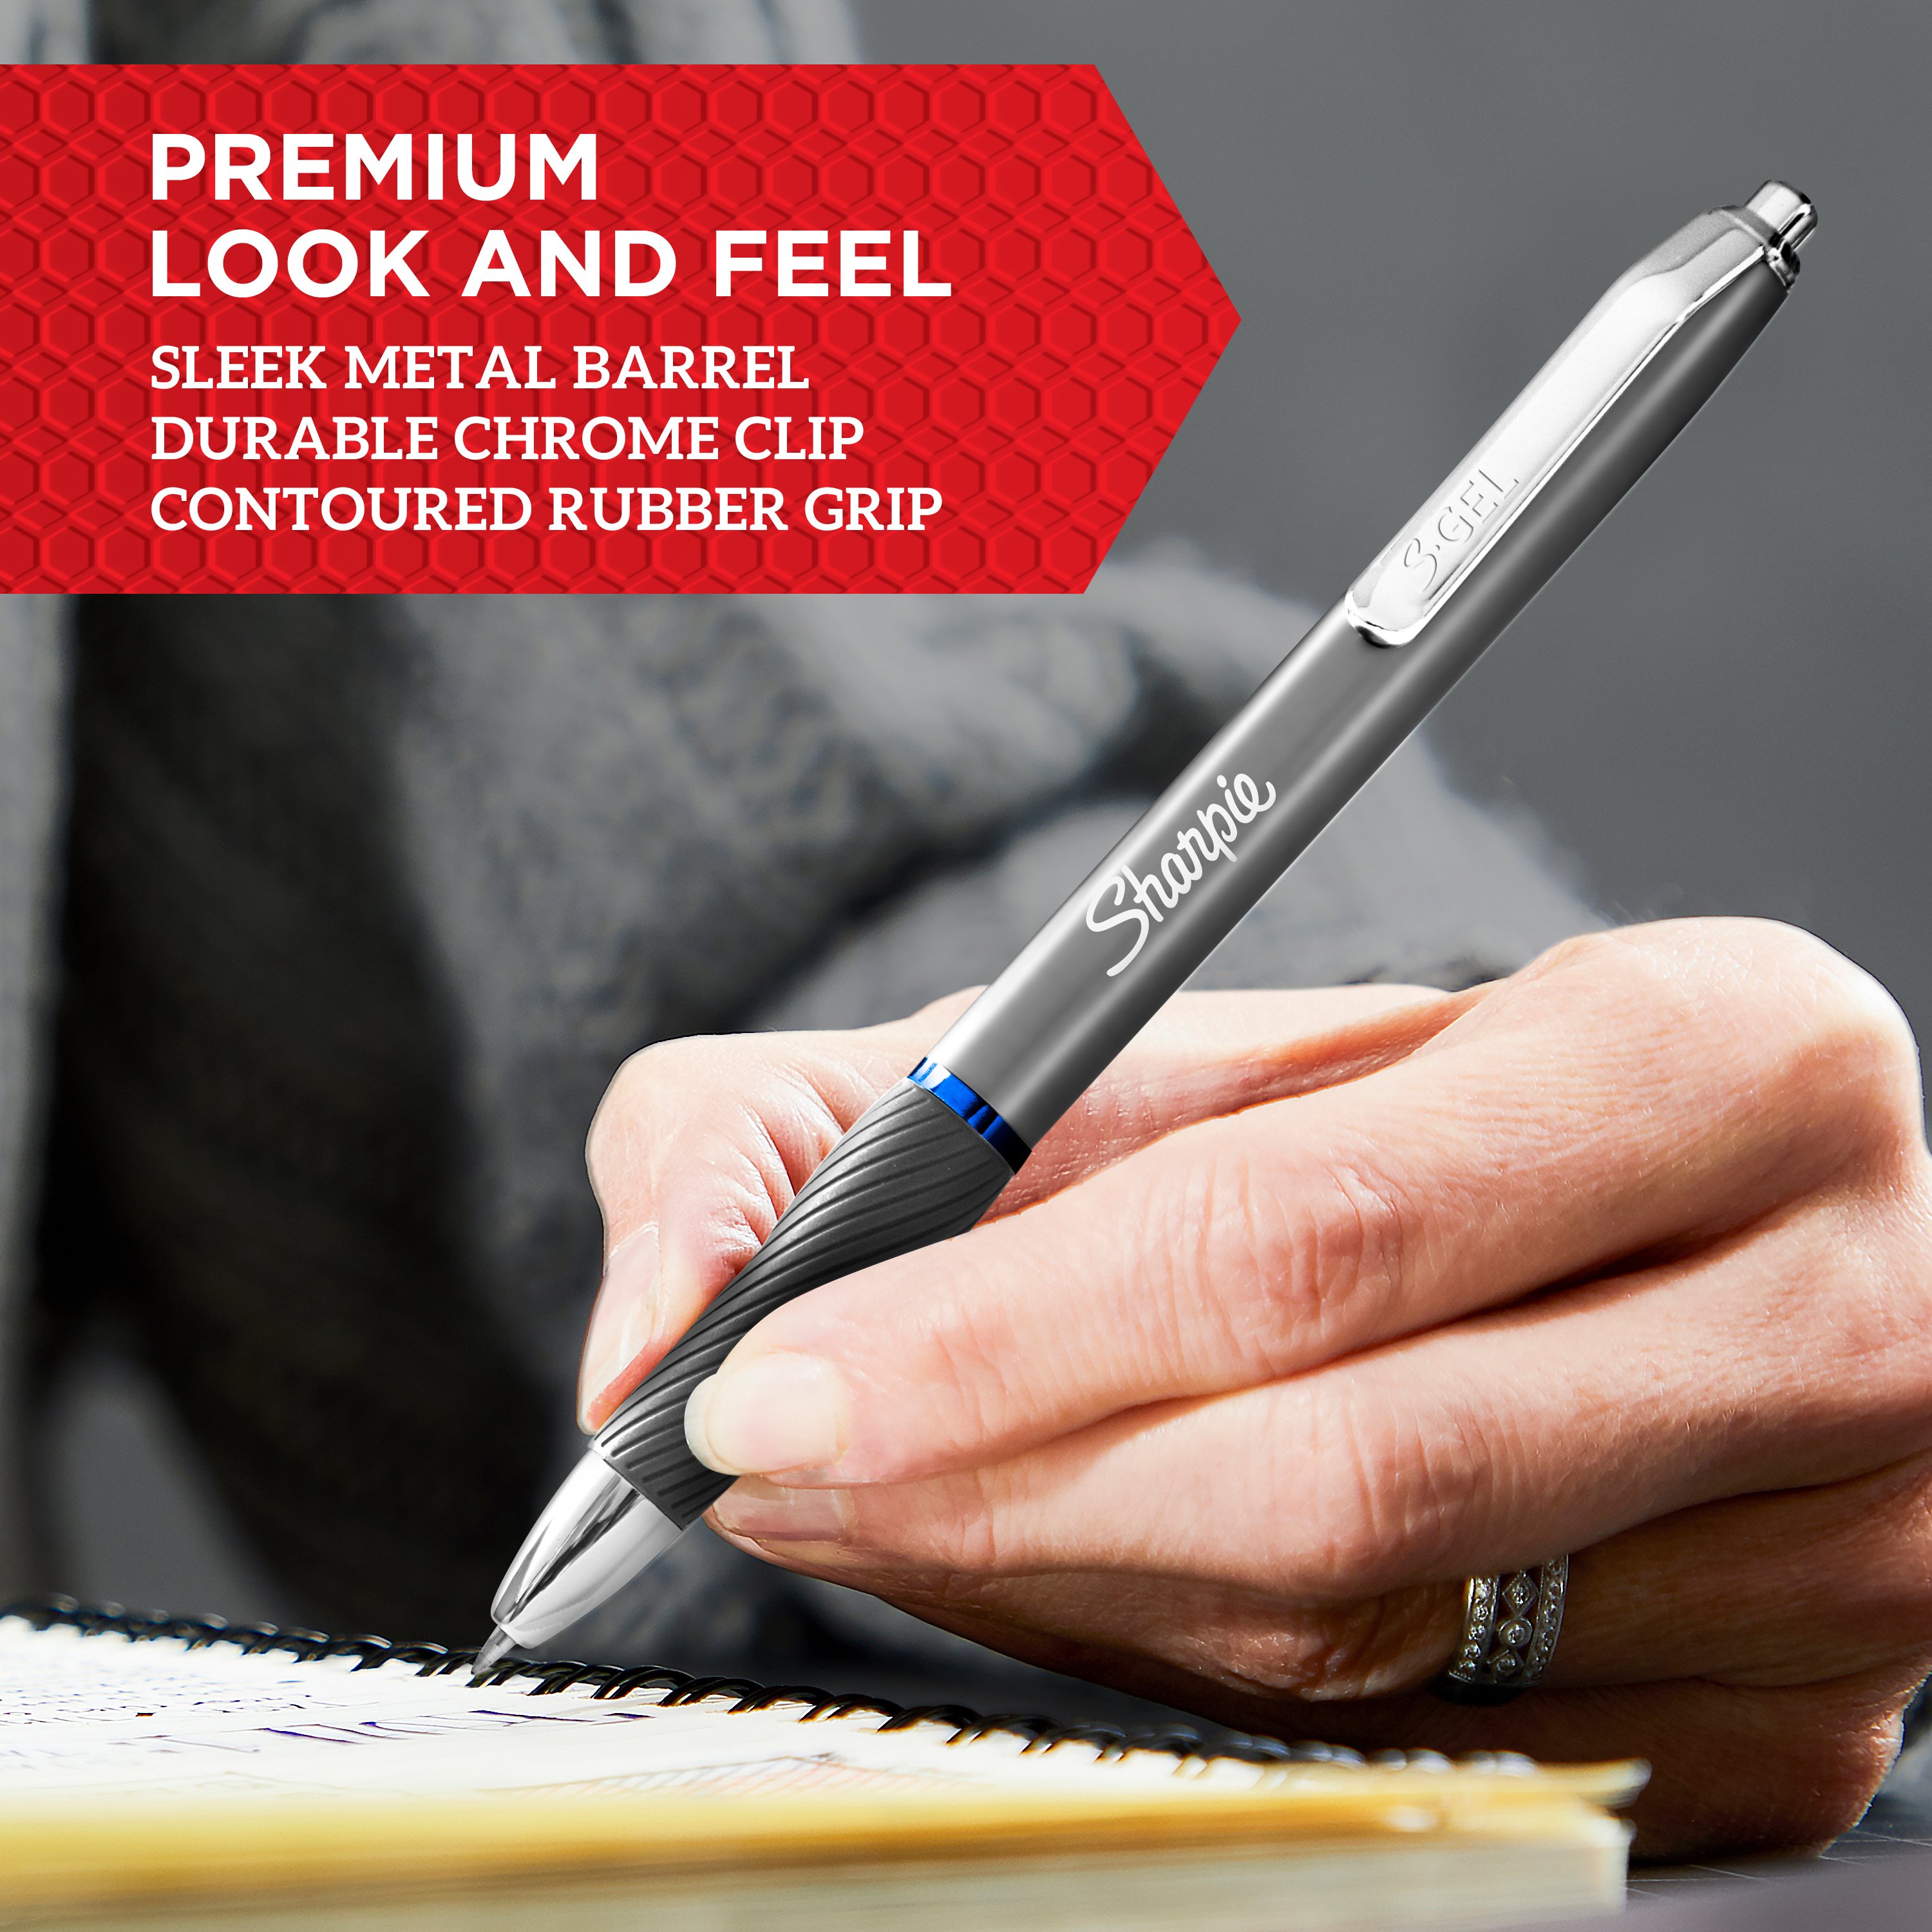 Sharpie S-Gel Gel Pen - 0.5 mm - Red